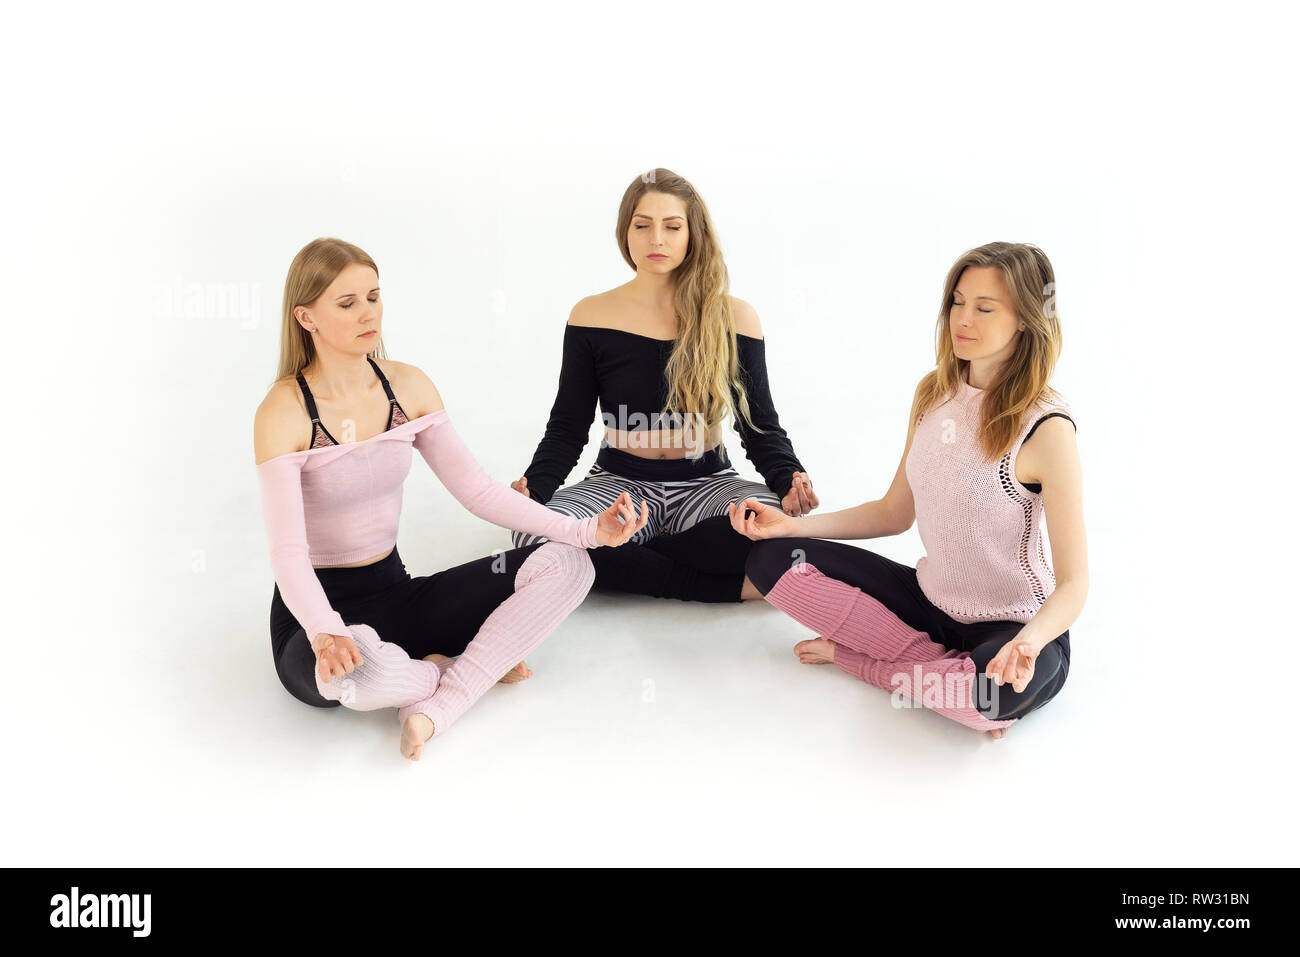 Groupe de jeunes belles filles de trois personnes faisant du yoga, la méditation zen avec les yeux fermés. Fond blanc Banque D'Images